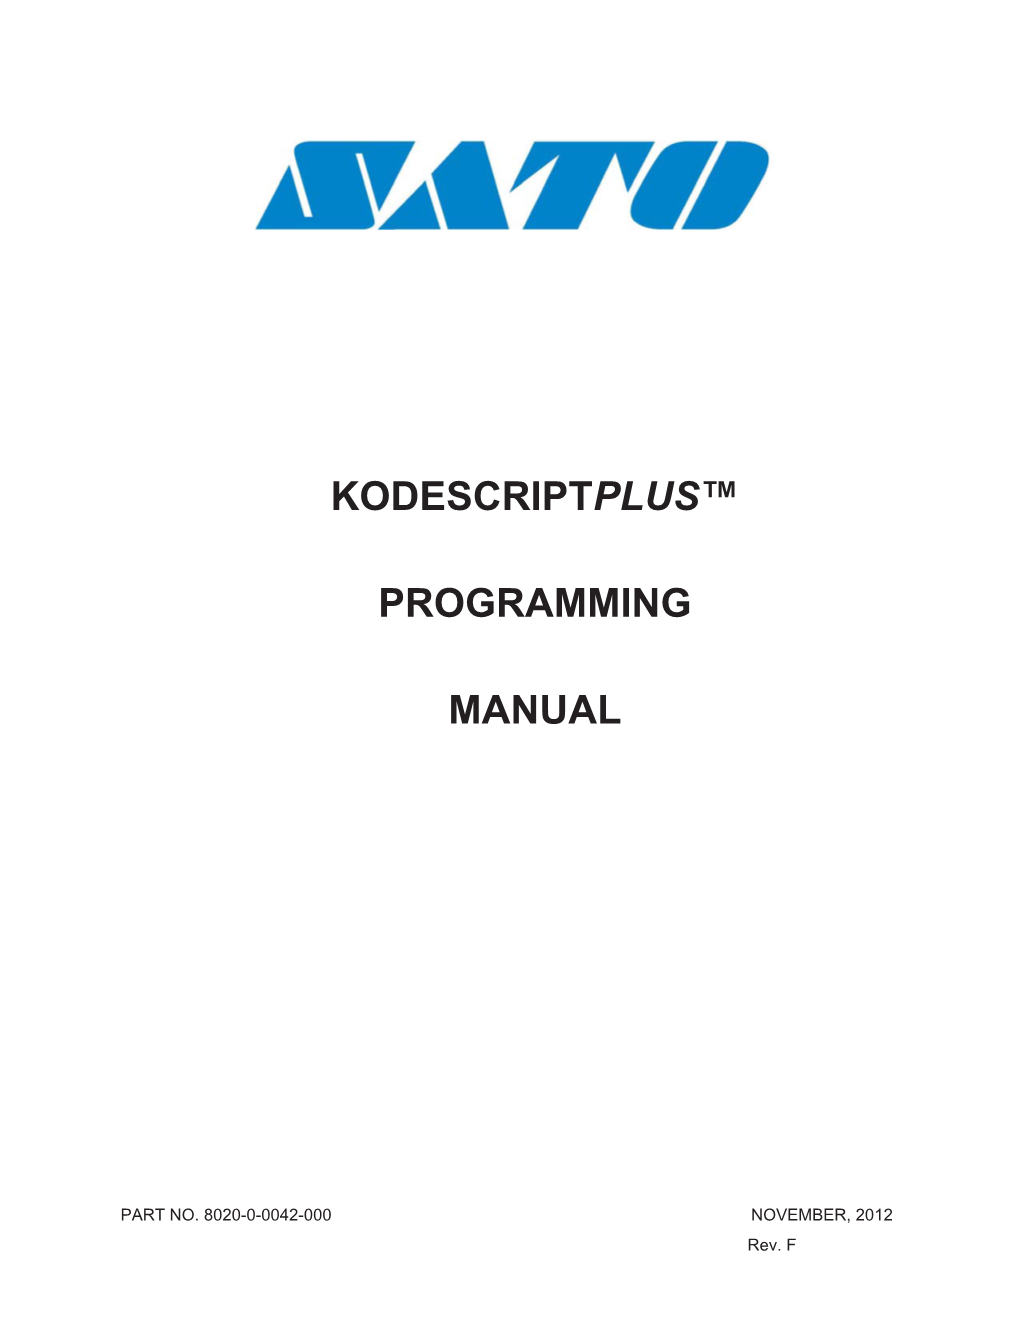 Kodescriptplus™ Programming Manual